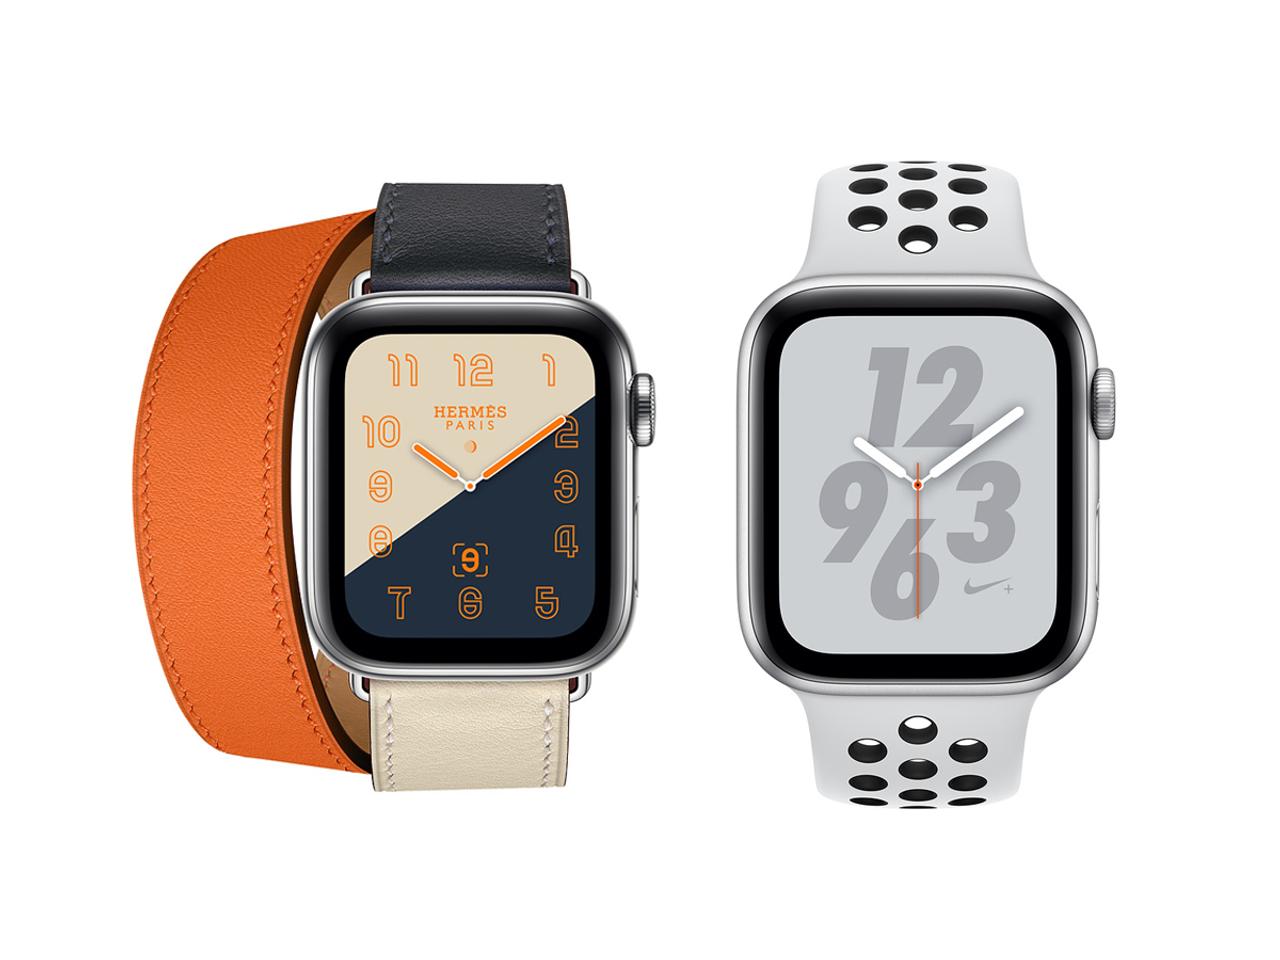 エルメス、Nike+コラボ、新型Apple Watch（Series 4）でも出ますよ #AppleEvent